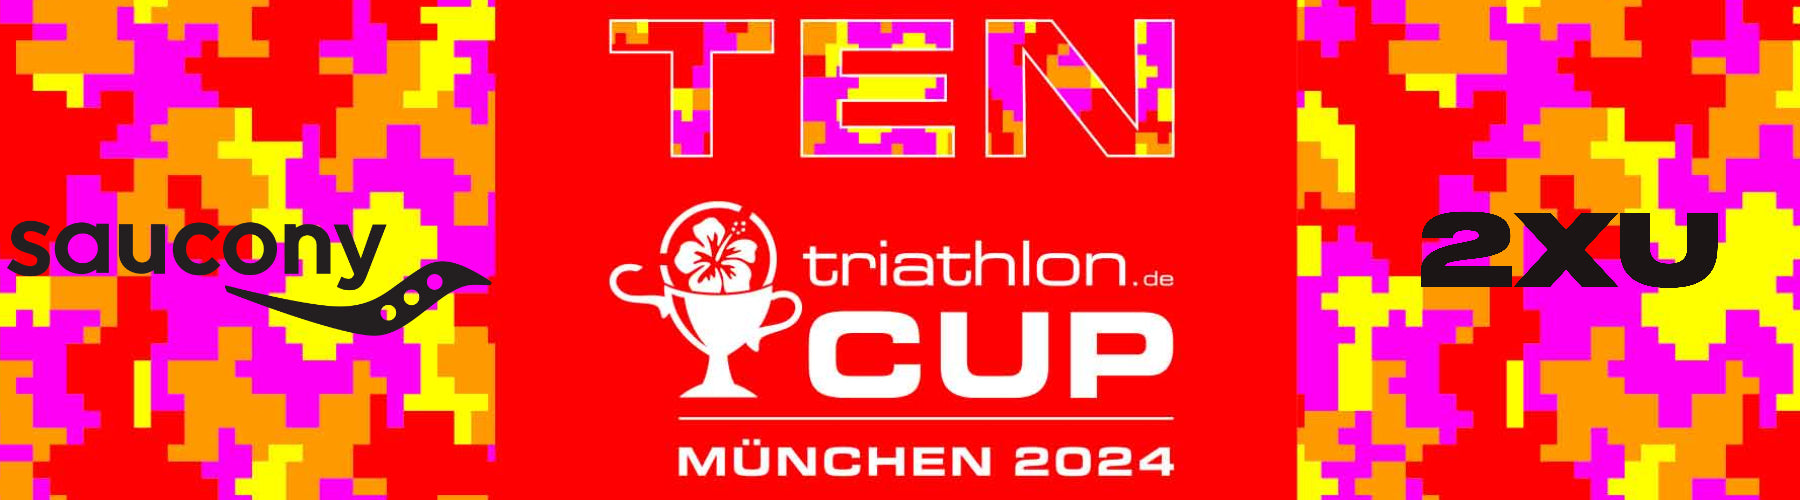 triathlon.de CUP München: Saucony Angebote